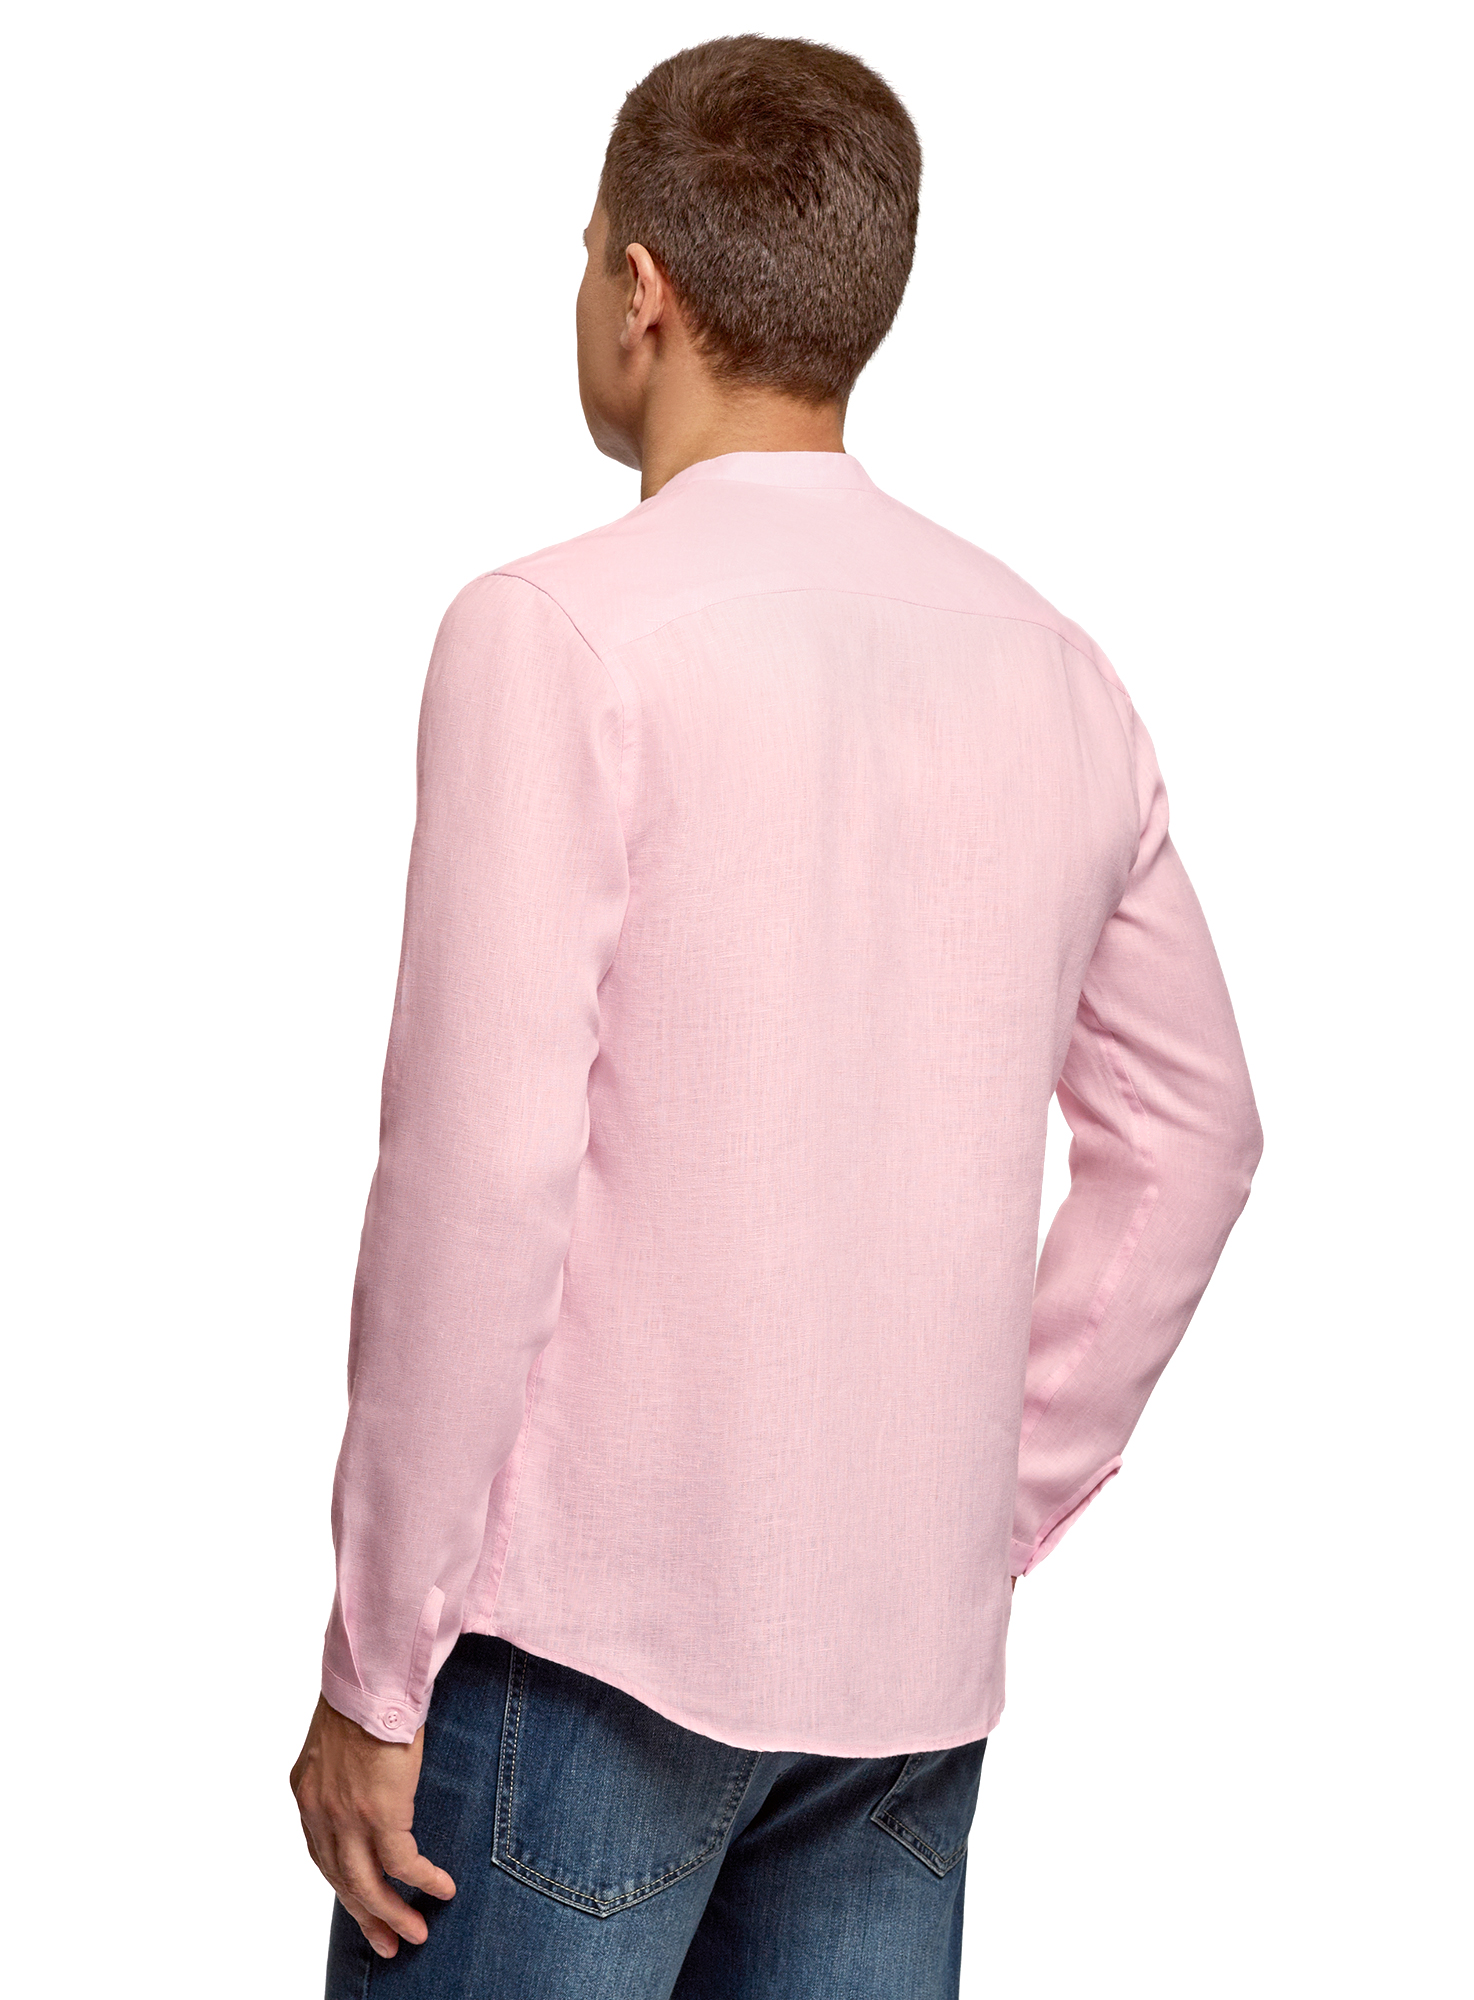 Рубашка мужская oodji 3B320002M розовая L